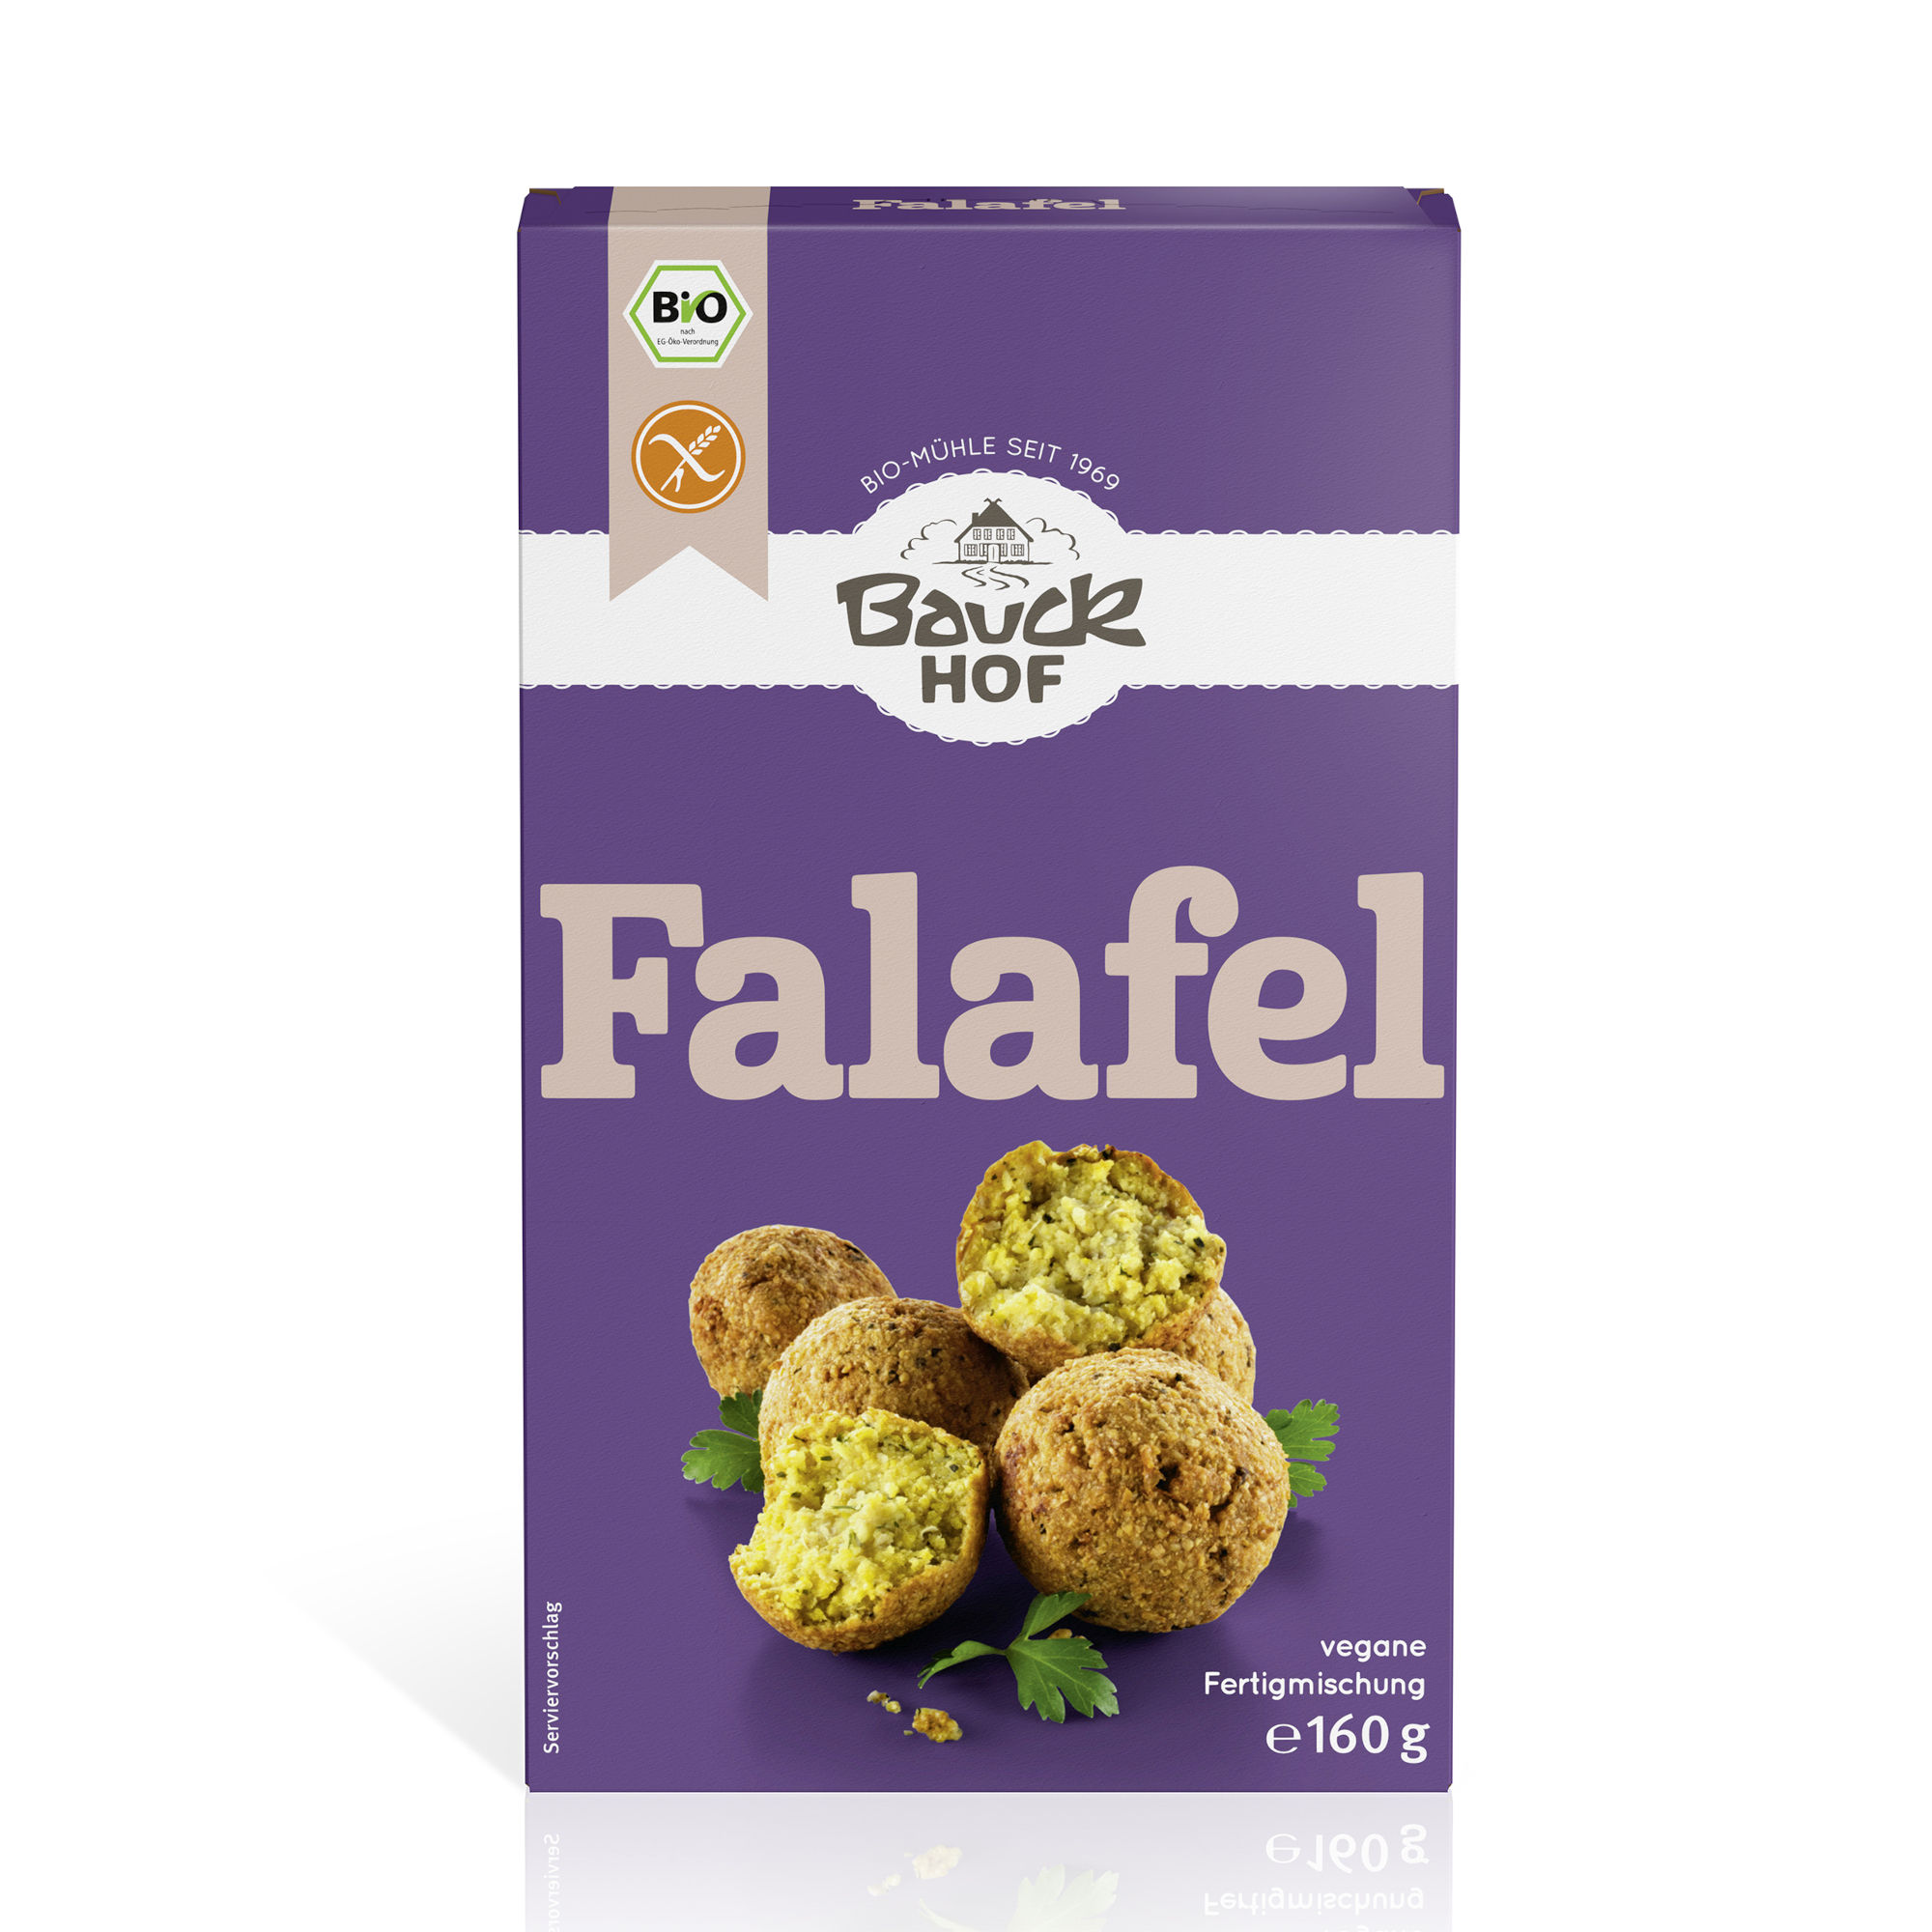 Falafel-Fertigmischung, glutenfrei, Bio von Bauckhof.